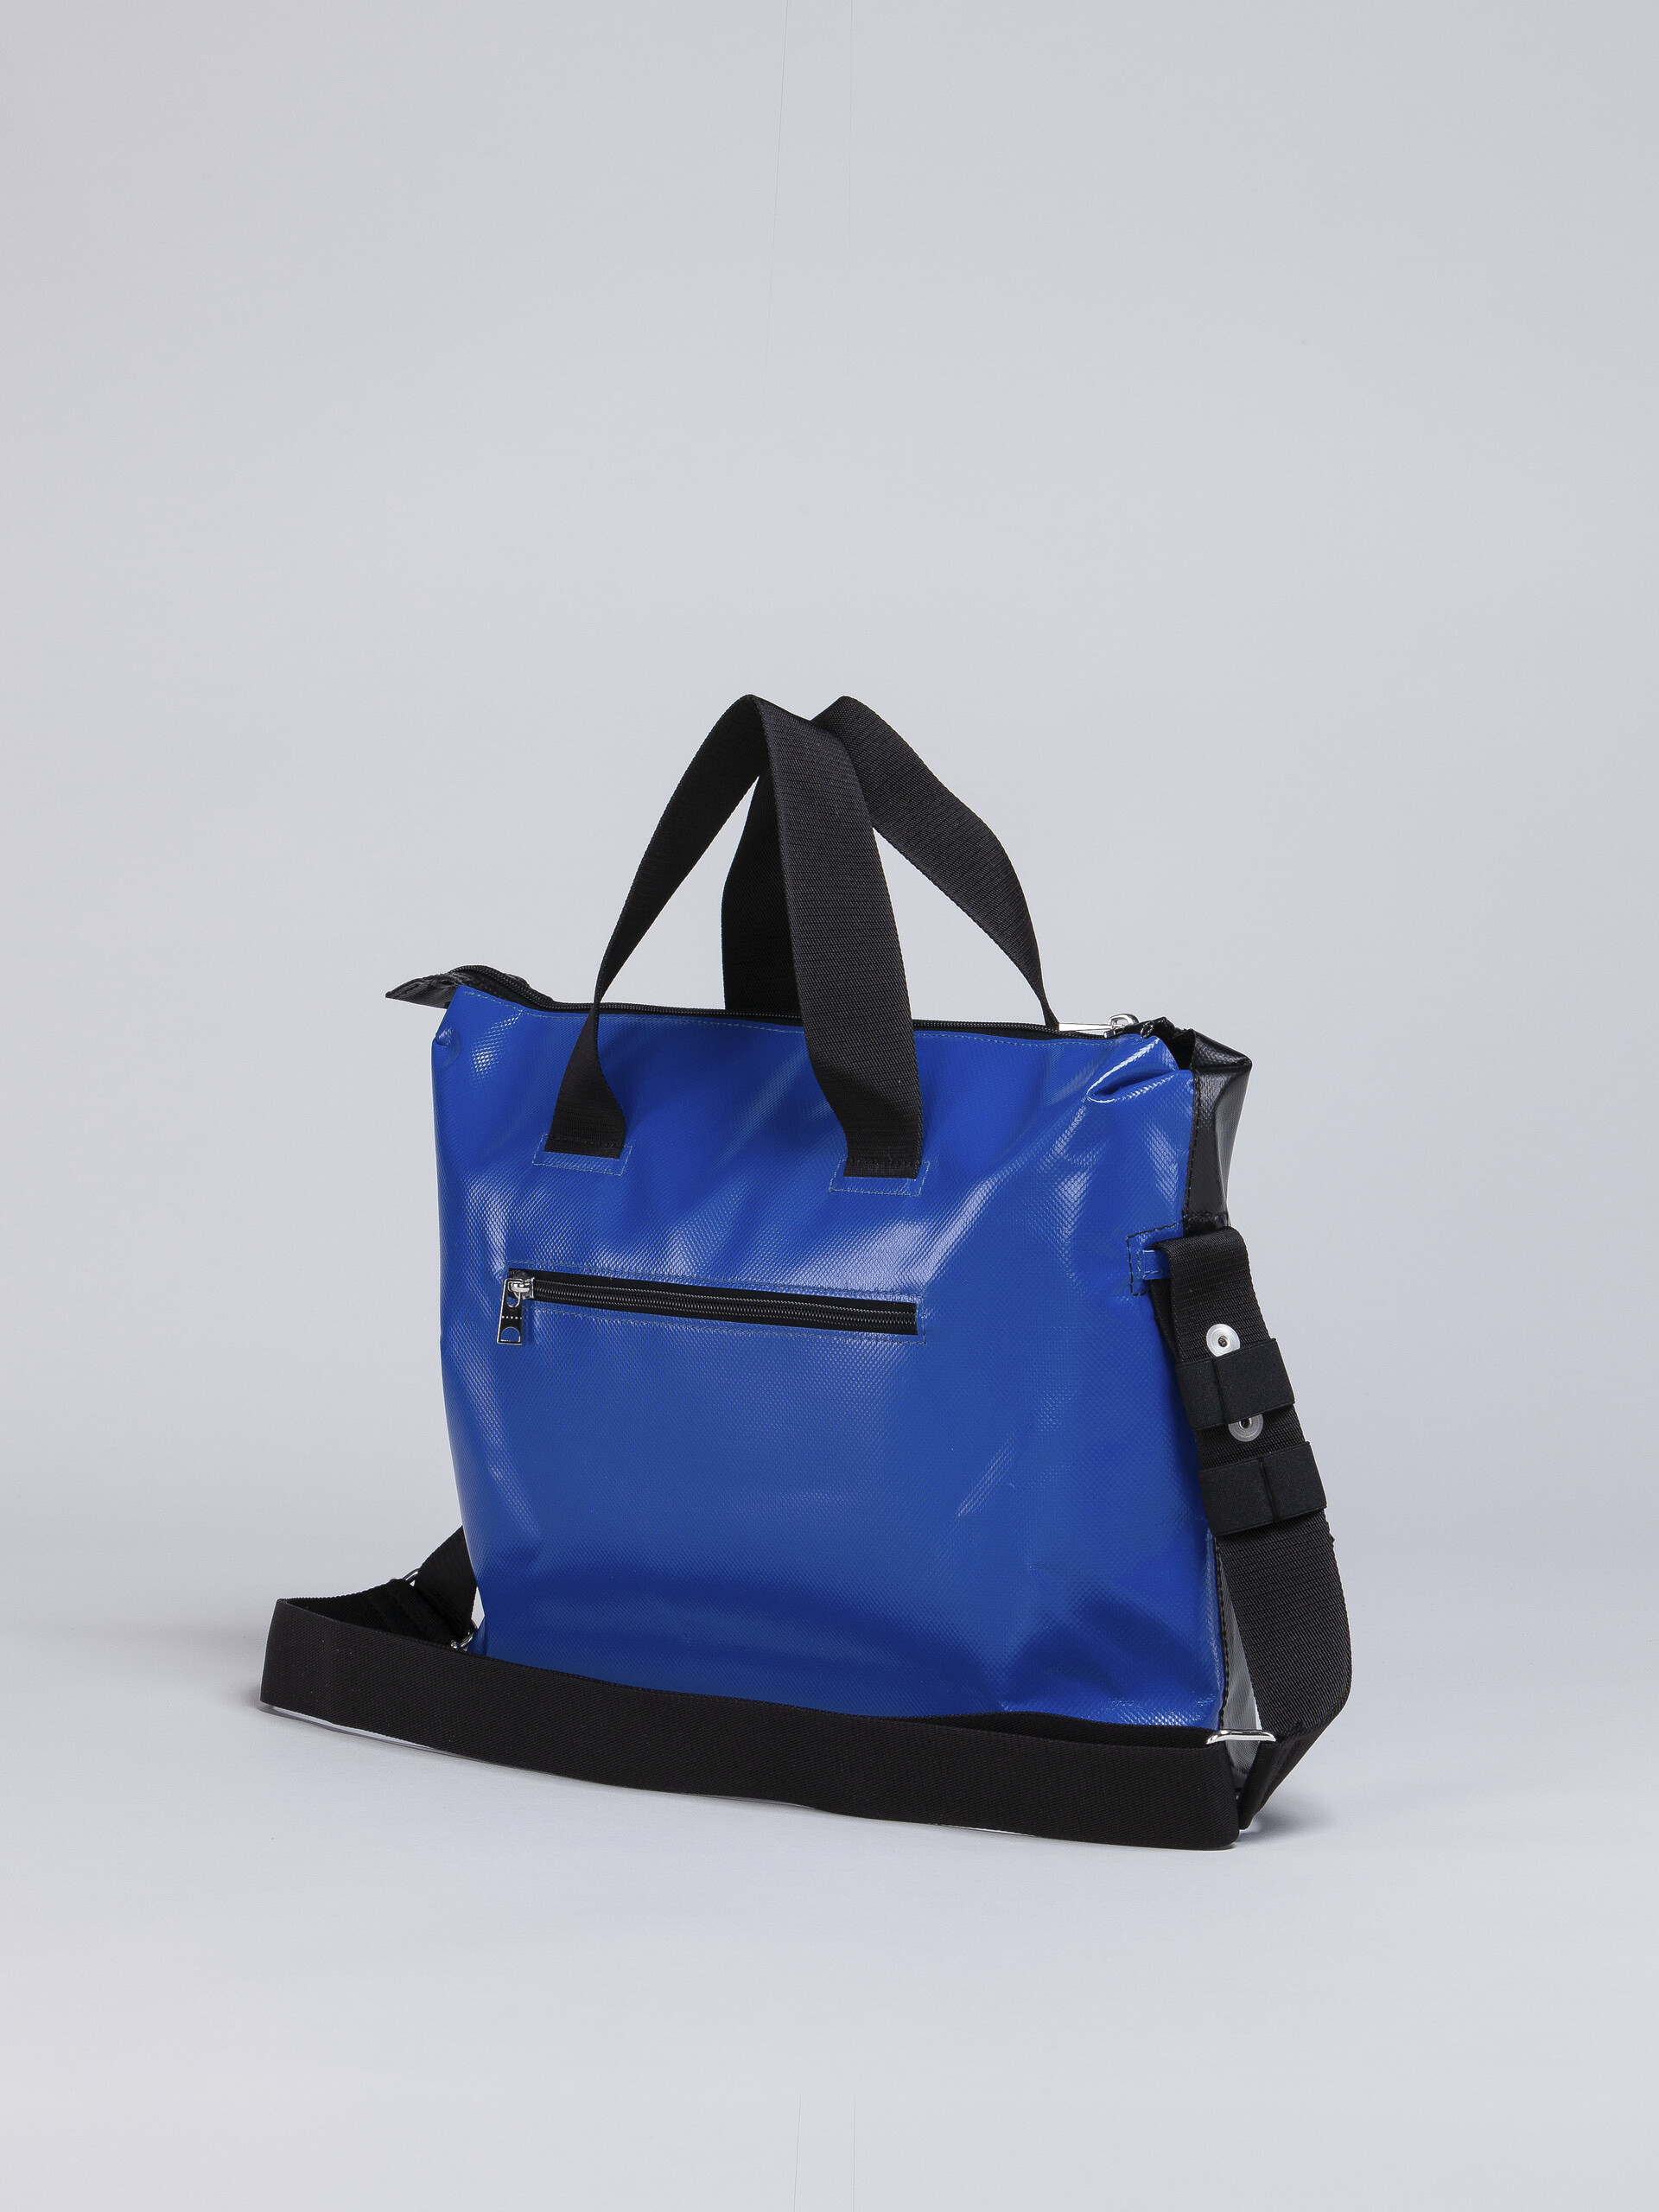 Black and blue TRIBECA bag - Handbag - Image 3